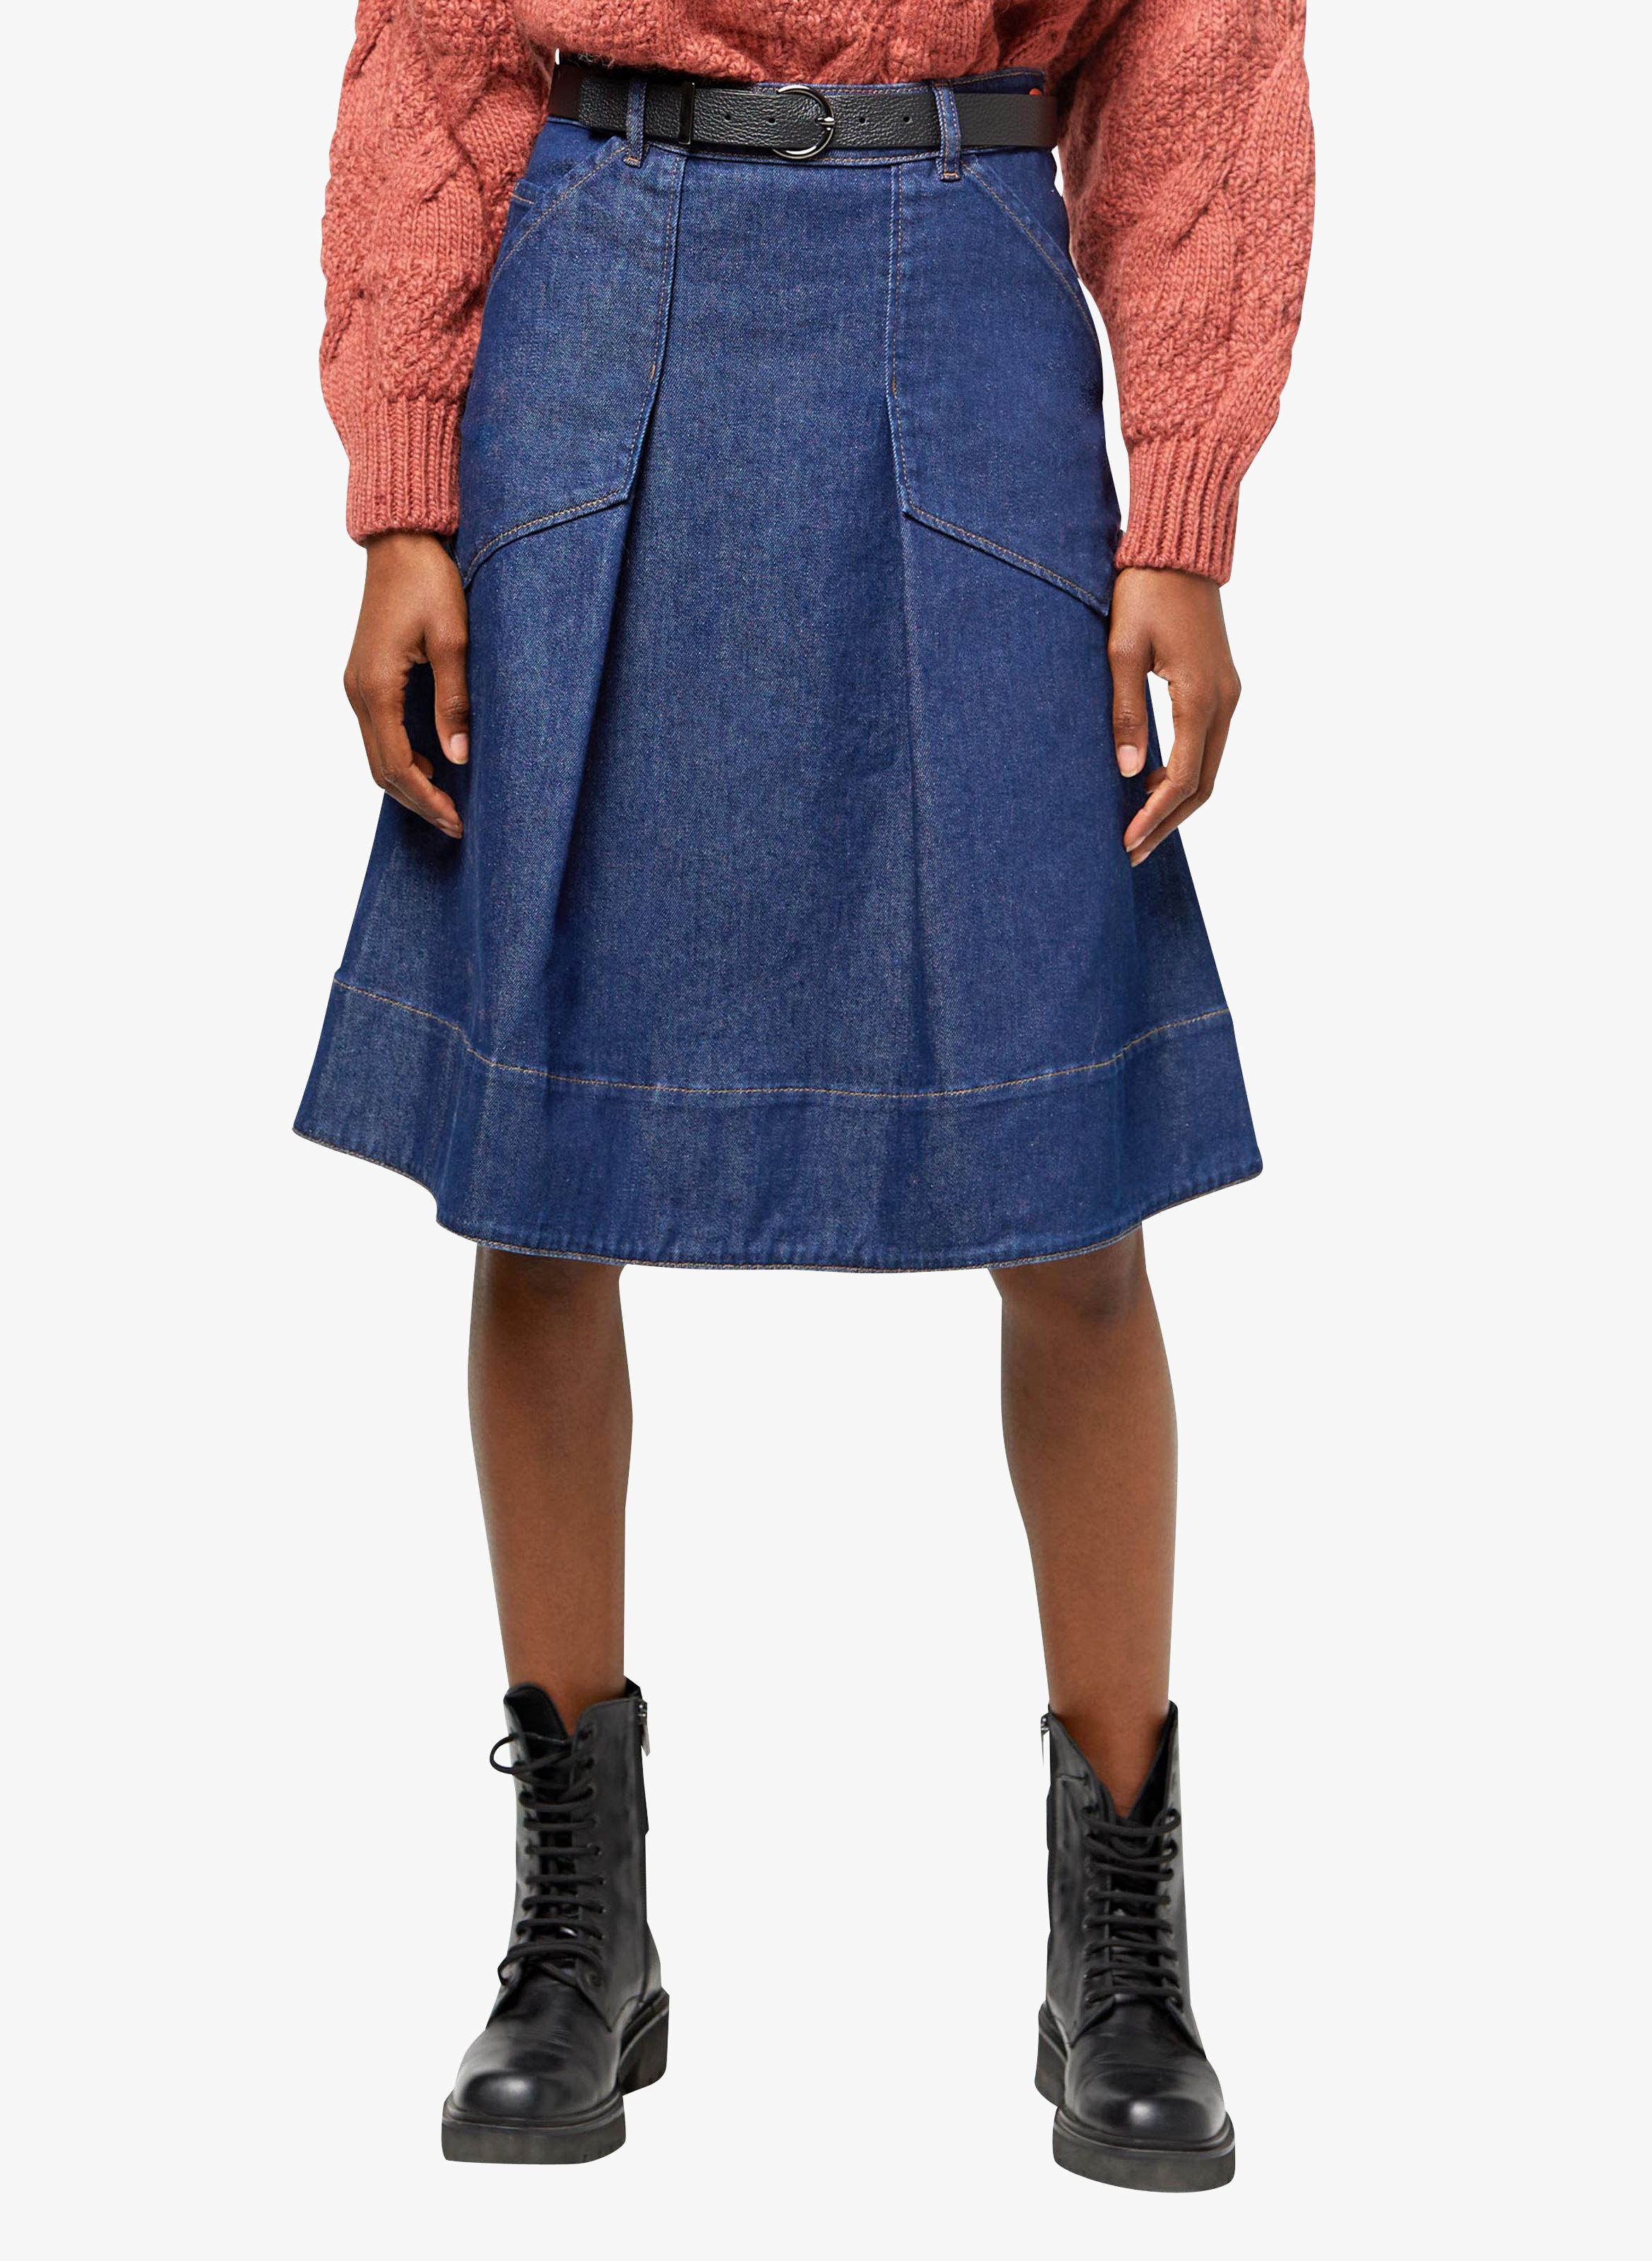 high waisted denim skirt uk